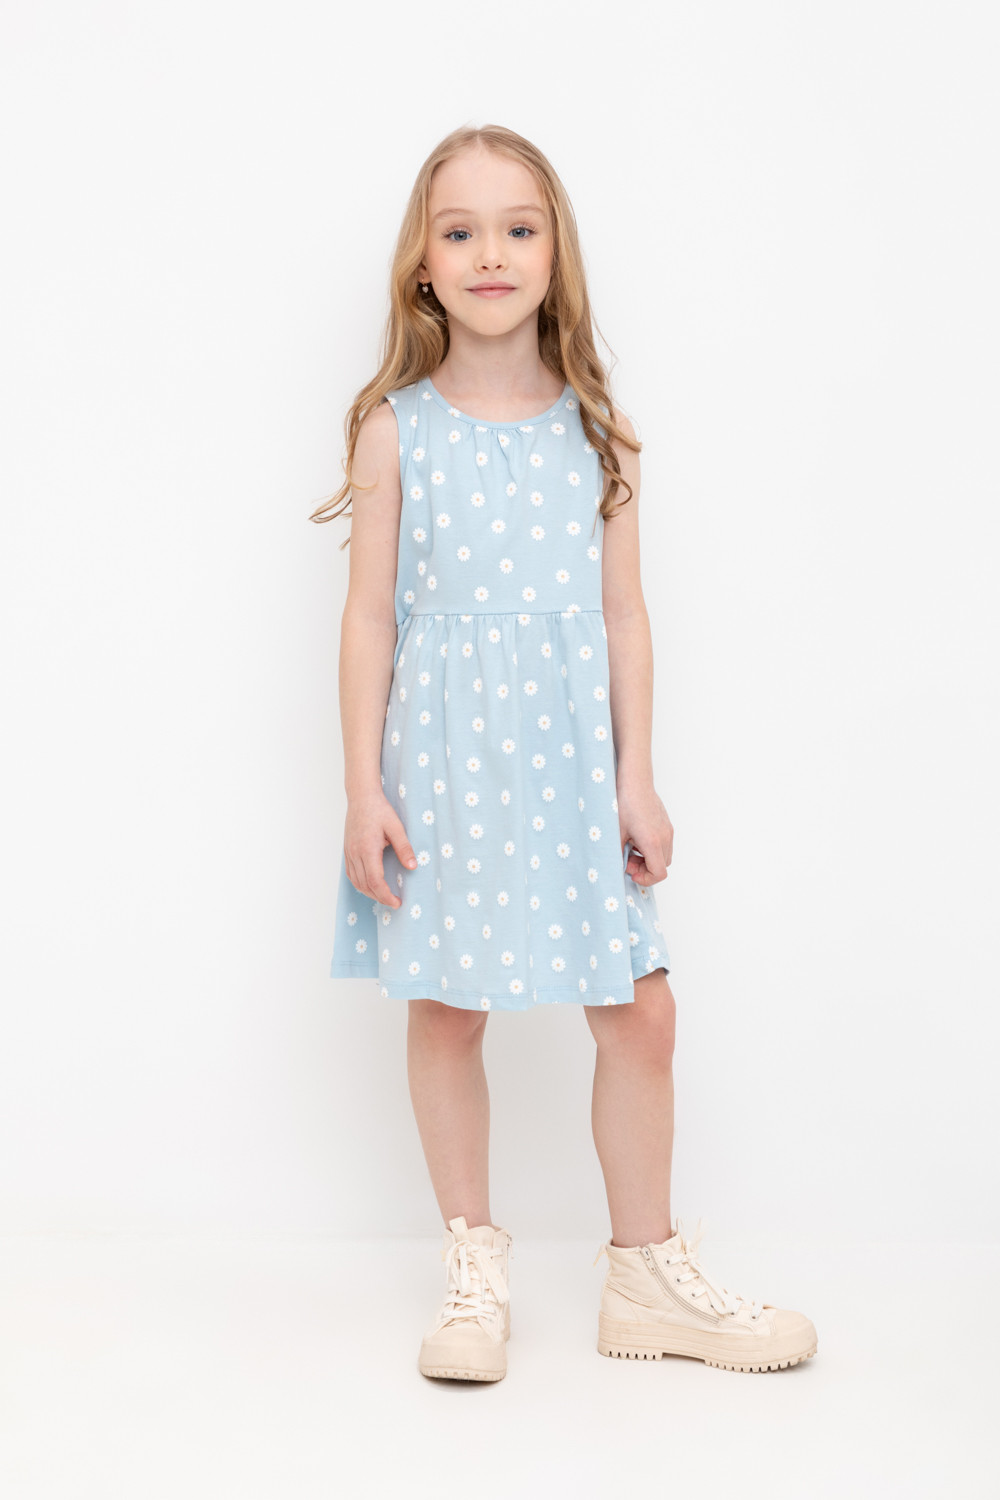 Платье детское CROCKID М 2618-7, голубая пудра, маленькие ромашки, 134